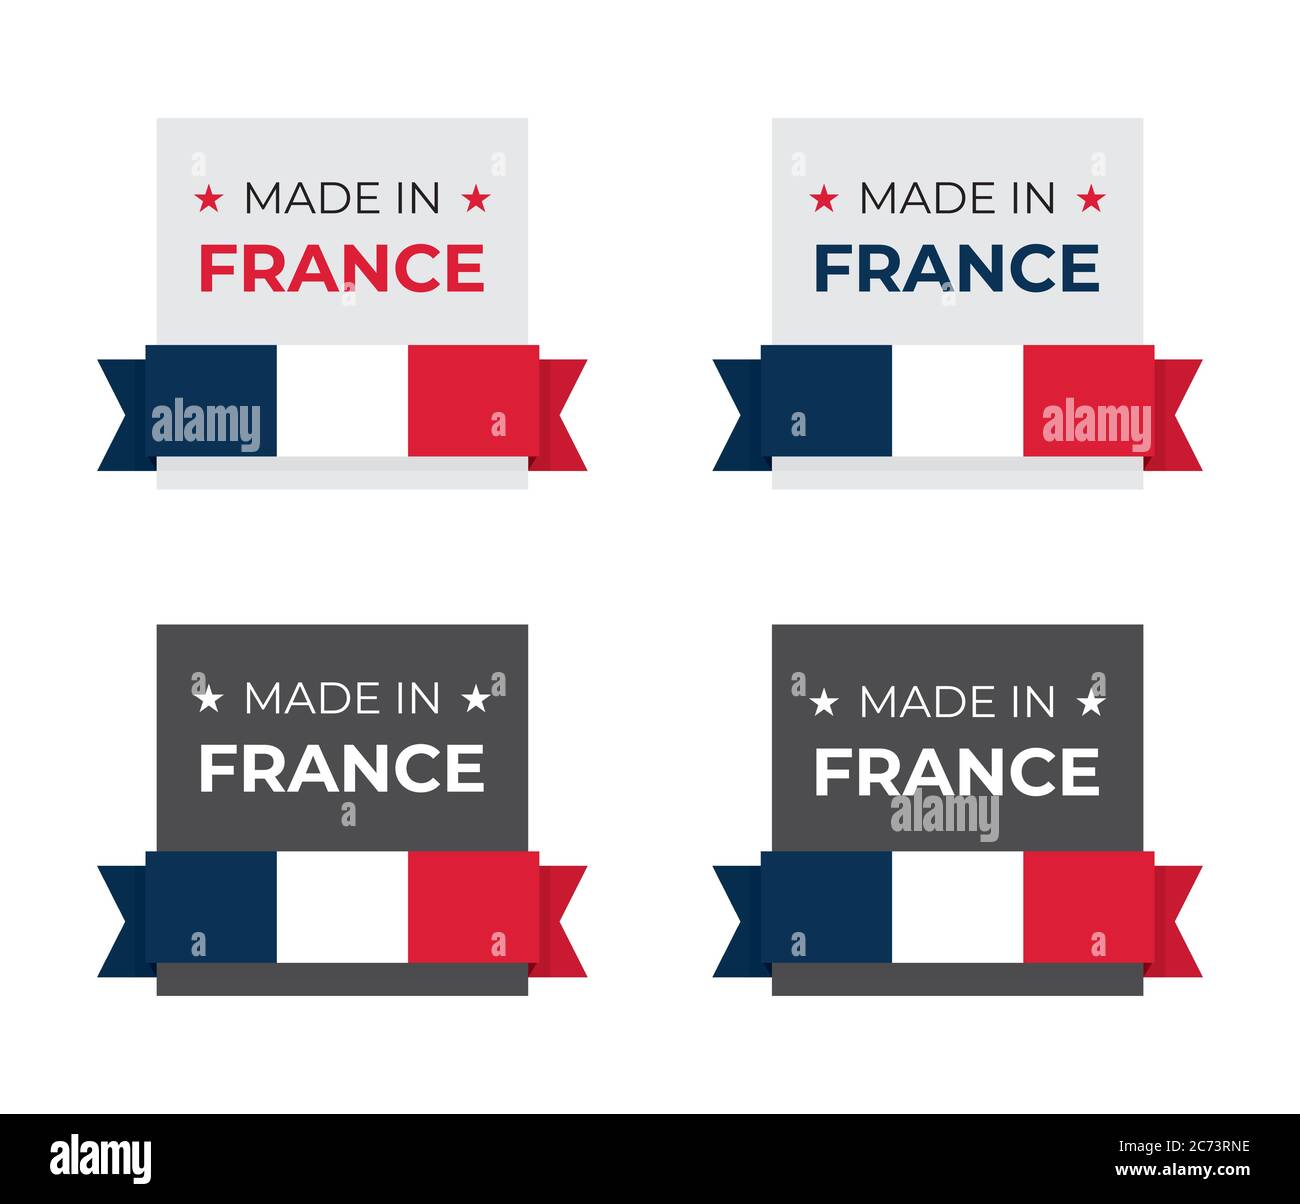 Fabriqué en France, symbole d'icône en français pour l'étiquette du produit et l'emblème inspiré du drapeau national Illustration de Vecteur